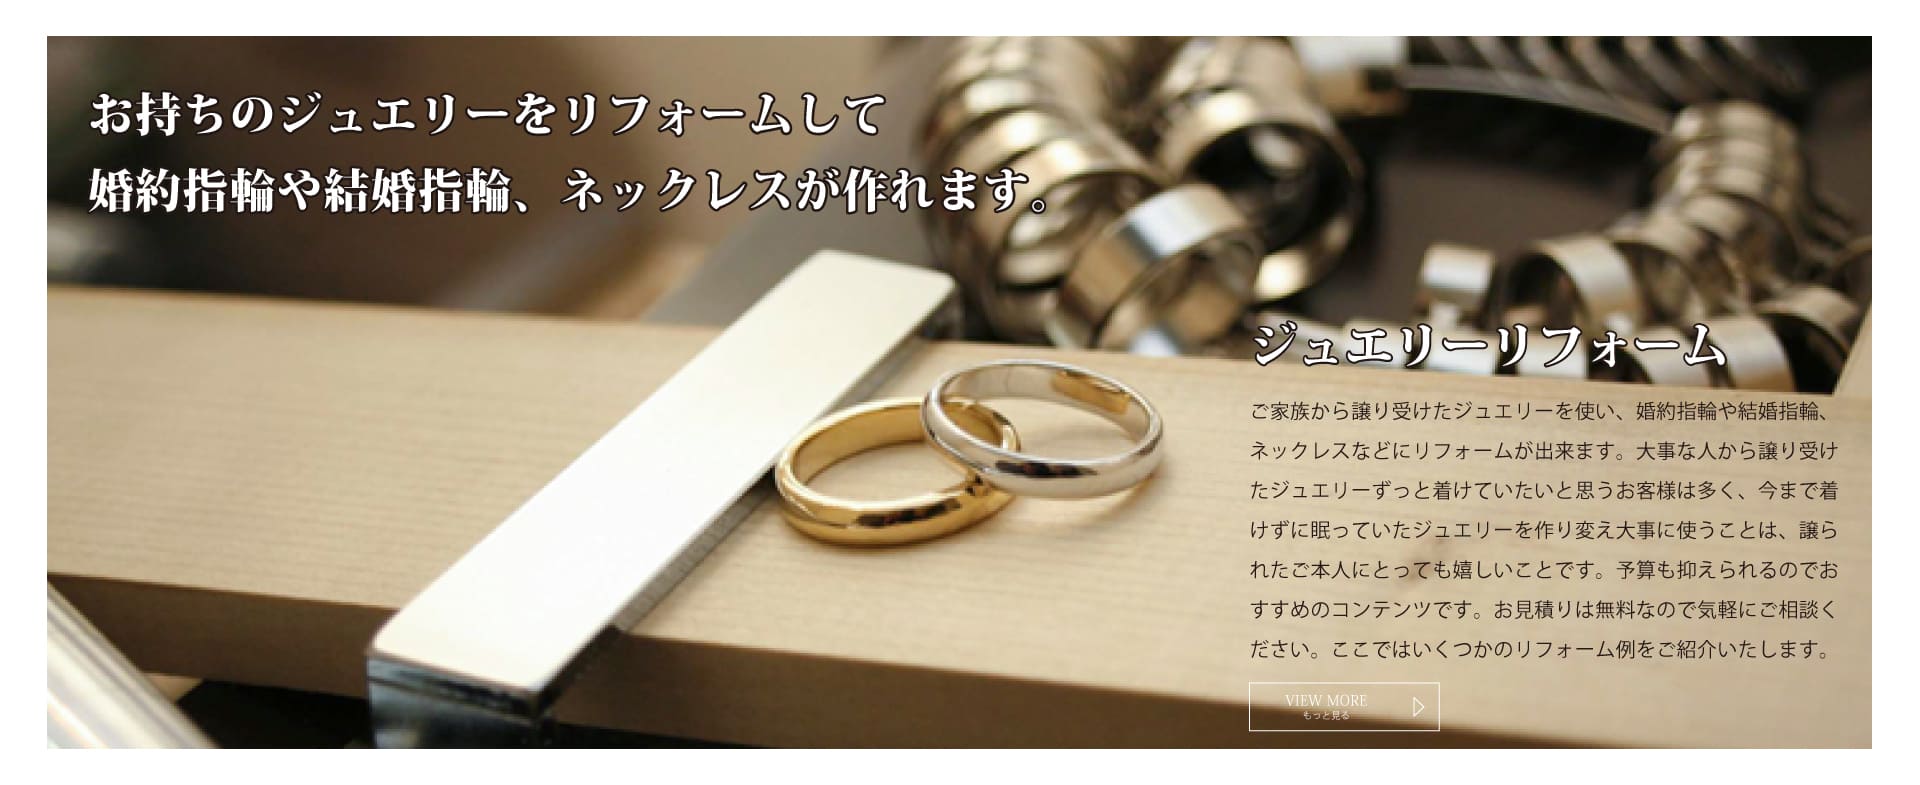 久留米市のCHARISでは、お手持ちのジュエリーでリフォームをして婚約指輪・結婚指輪・婚約ネックレスなどお作りしております。